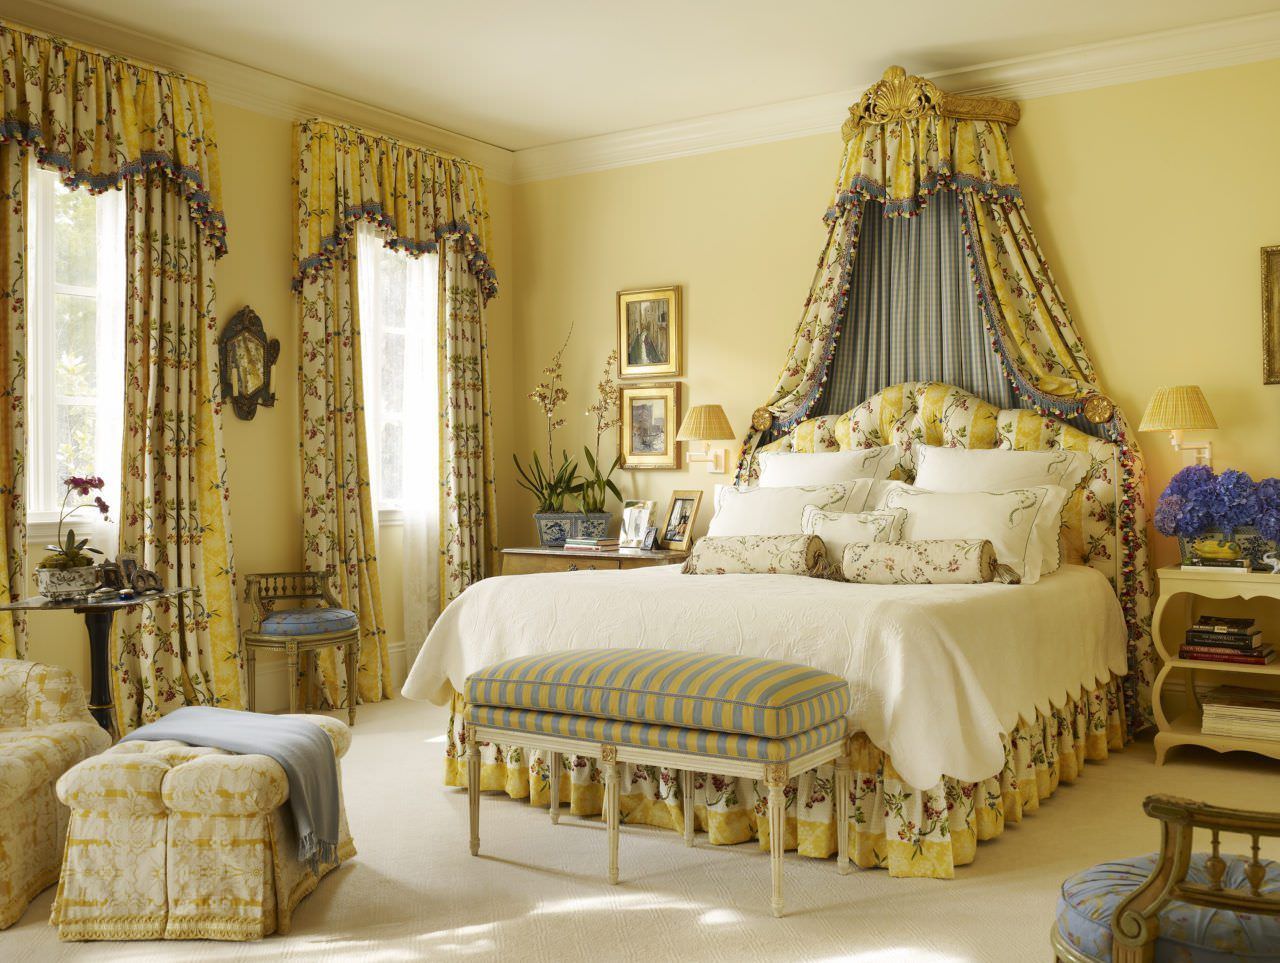 Cách trang trí phòng ngủ màu vàng độc đáo với các hoạ tiết hoa đến từ rèm cửa, bộ drap giường kết hợp màu sơn tường màu vàng kem